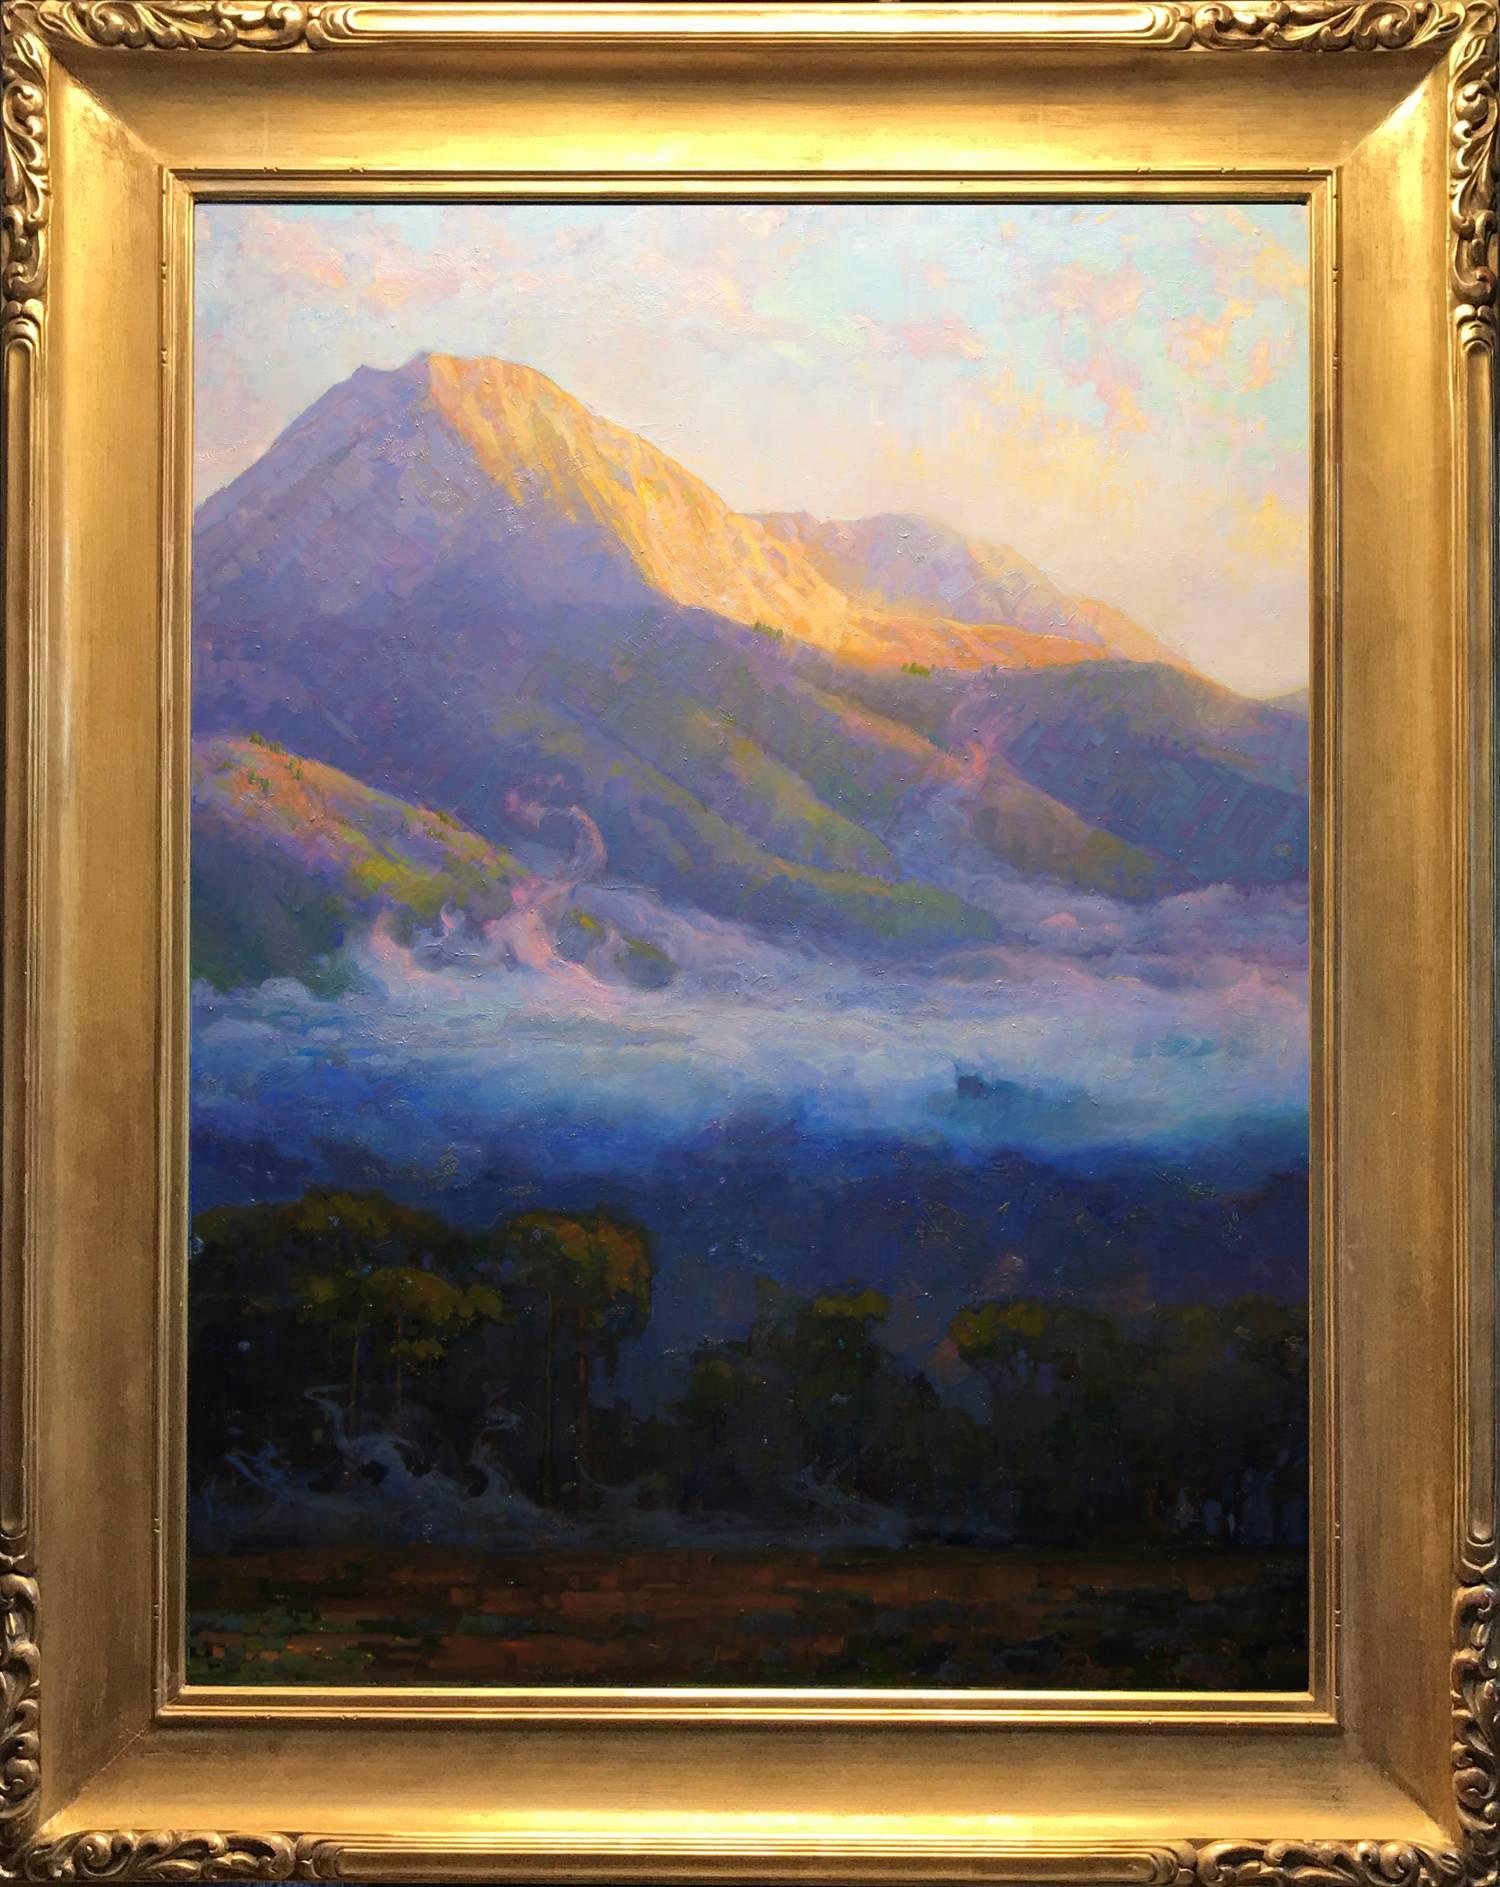 Peter Adams Landscape Painting - Morning Clouds Hovering Below Mount Blanca; Trinchera Ranch, Colorado